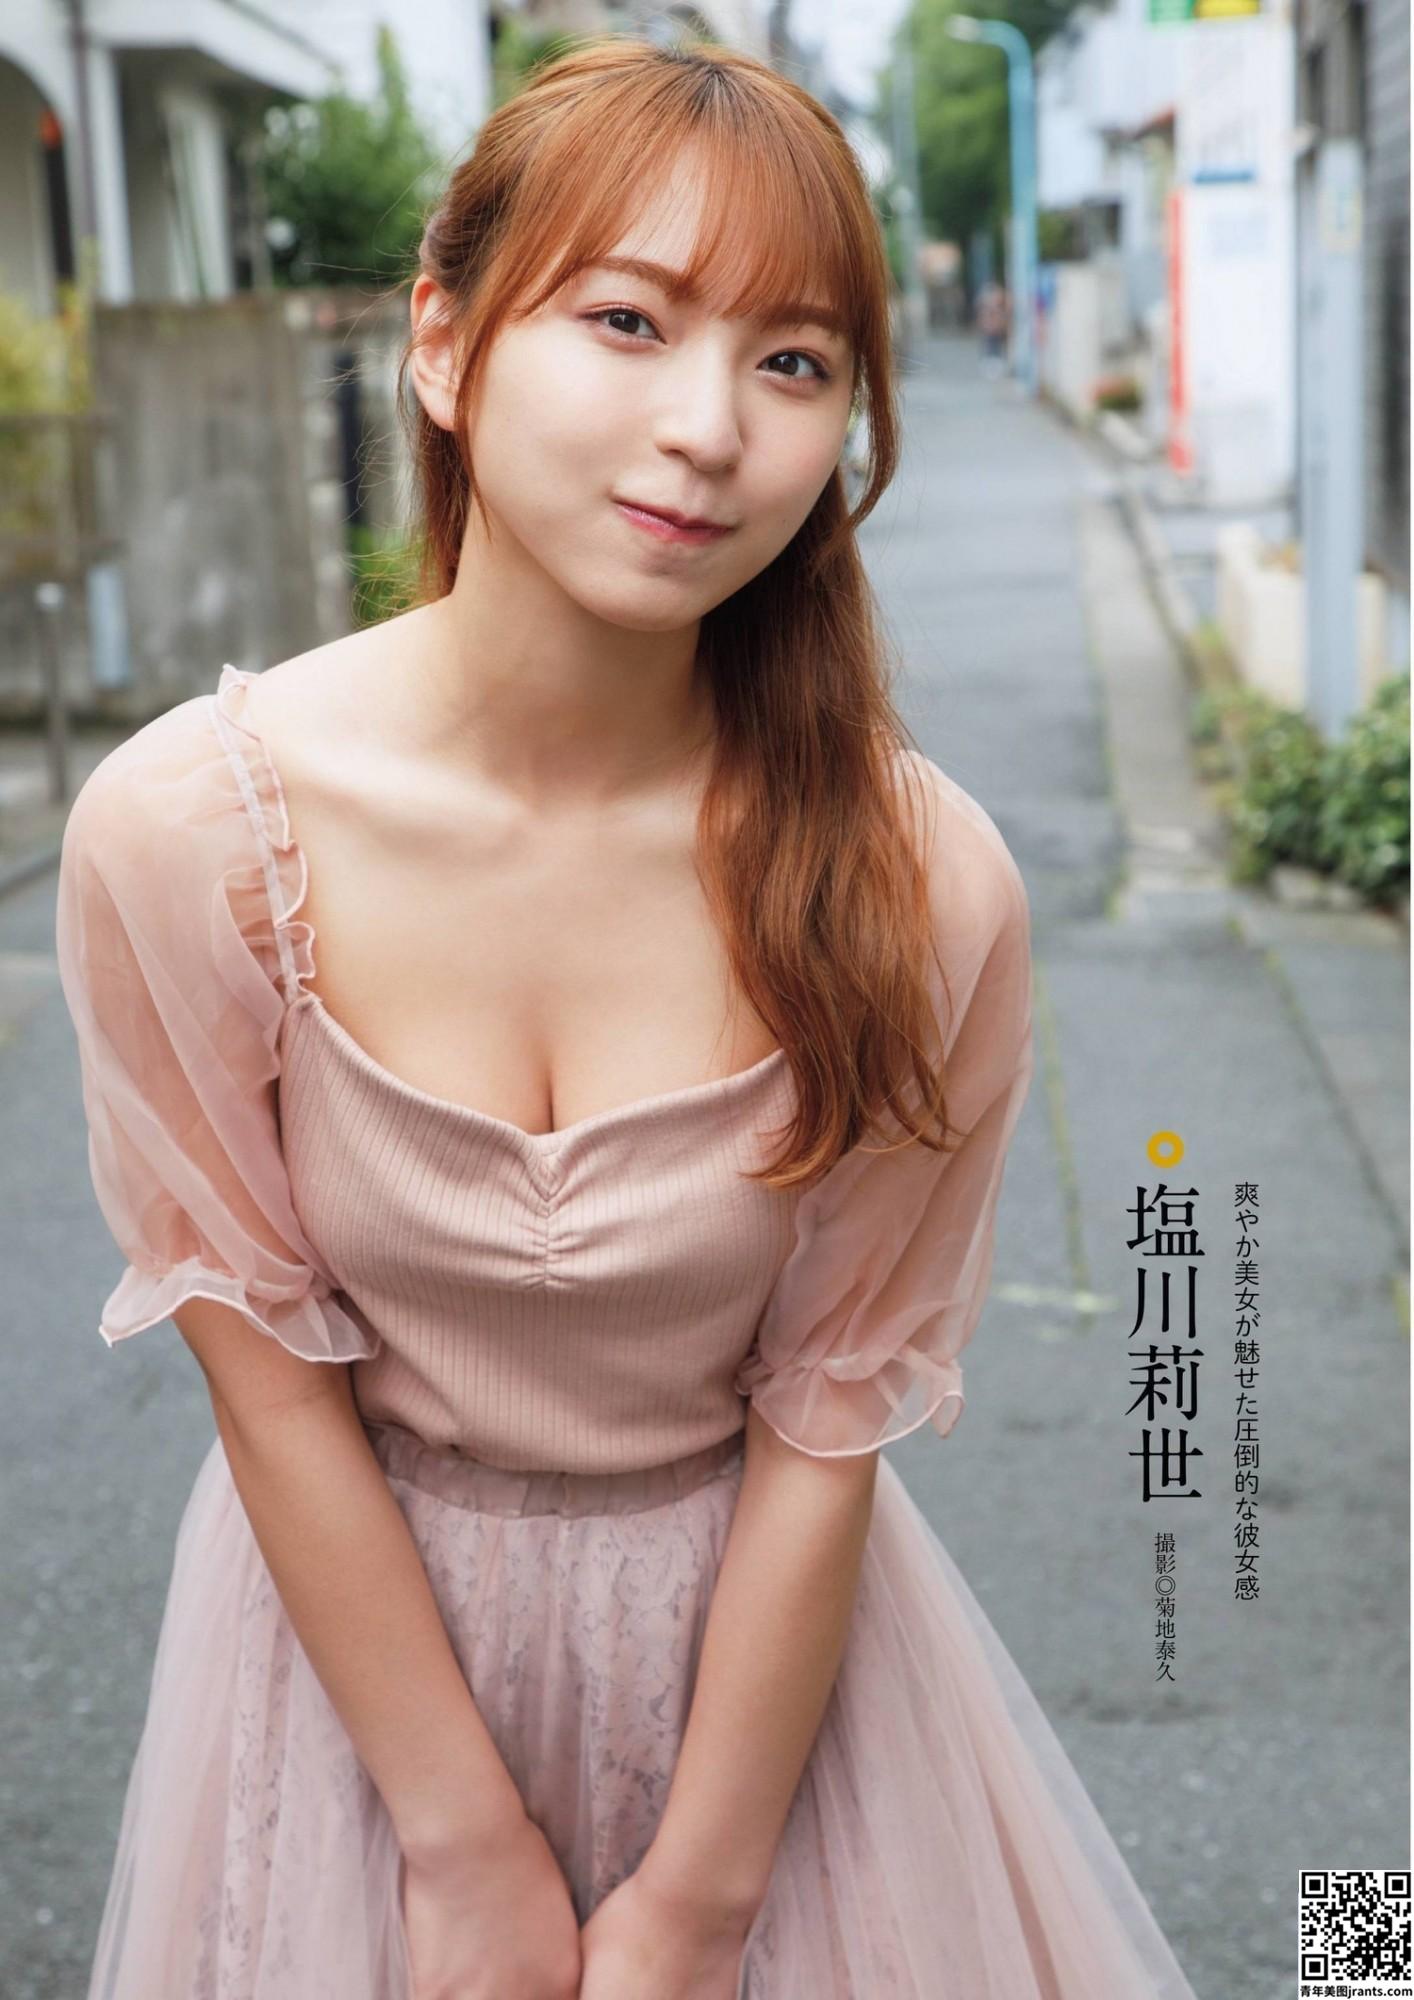 [塩川莉世] 偶像级美少女 甜美外型让人看了整个恋爱 (15P)